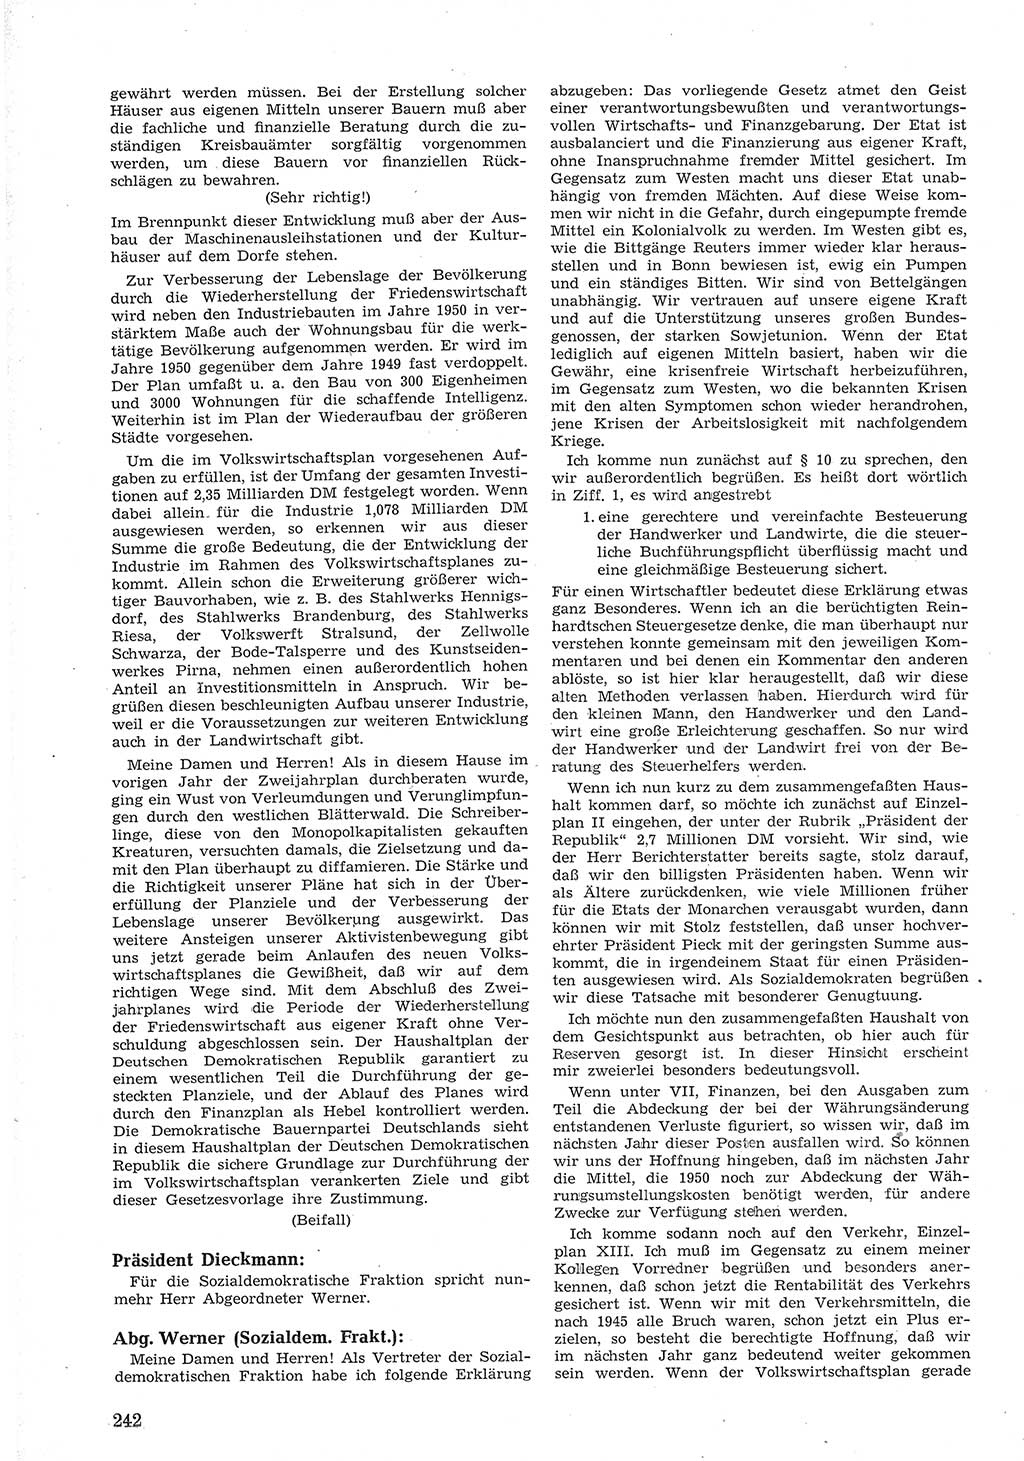 Provisorische Volkskammer (VK) der Deutschen Demokratischen Republik (DDR) 1949-1950, Dokument 256 (Prov. VK DDR 1949-1950, Dok. 256)